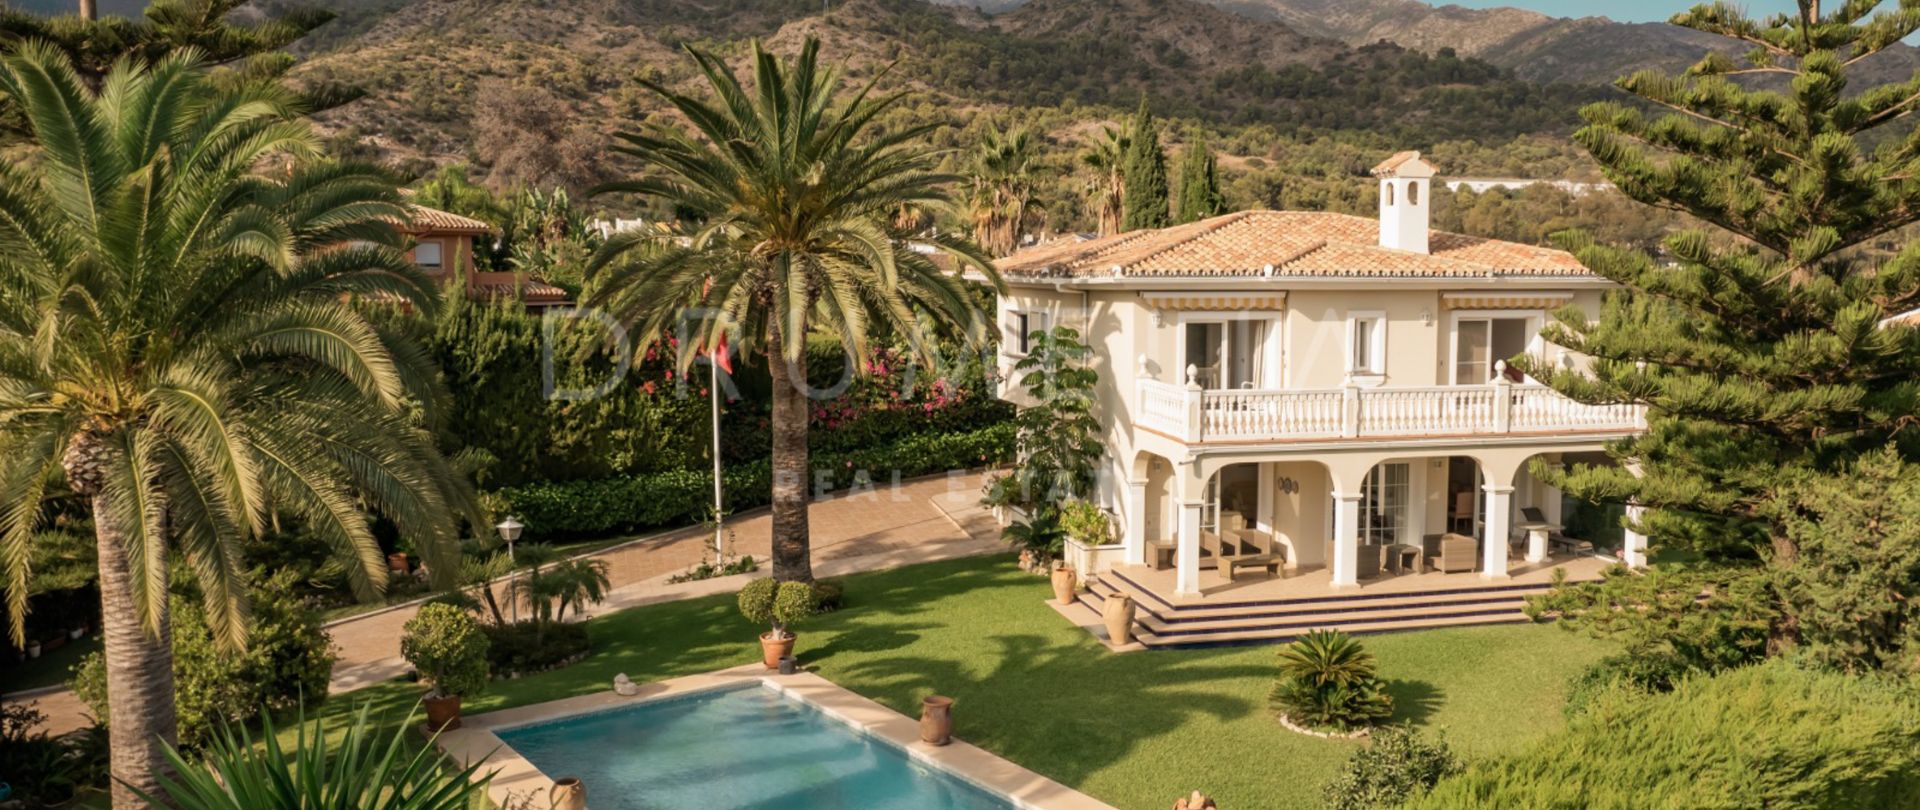 Elegant Medelhavsstil High-End Villa i vackra Marbella